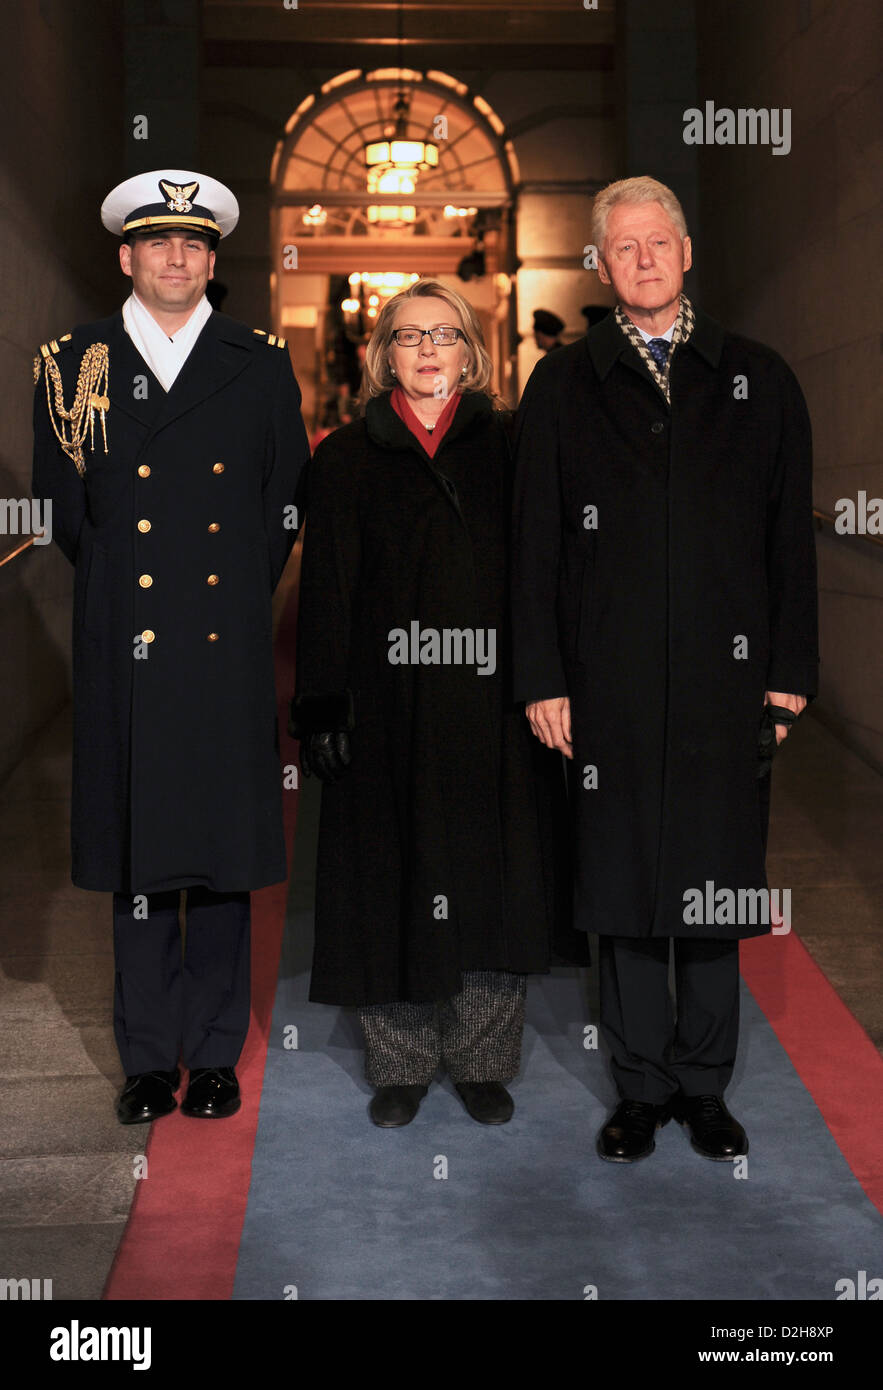 Ehemalige US-Präsident William Clinton und US-Außenministerin Hillary Rodham Clinton werden zur Plattform für die Vereidigung bei der 57. Presidential Inauguration auf dem US Capitol 21. Januar 2013 in Washington, DC begleitet. Stockfoto